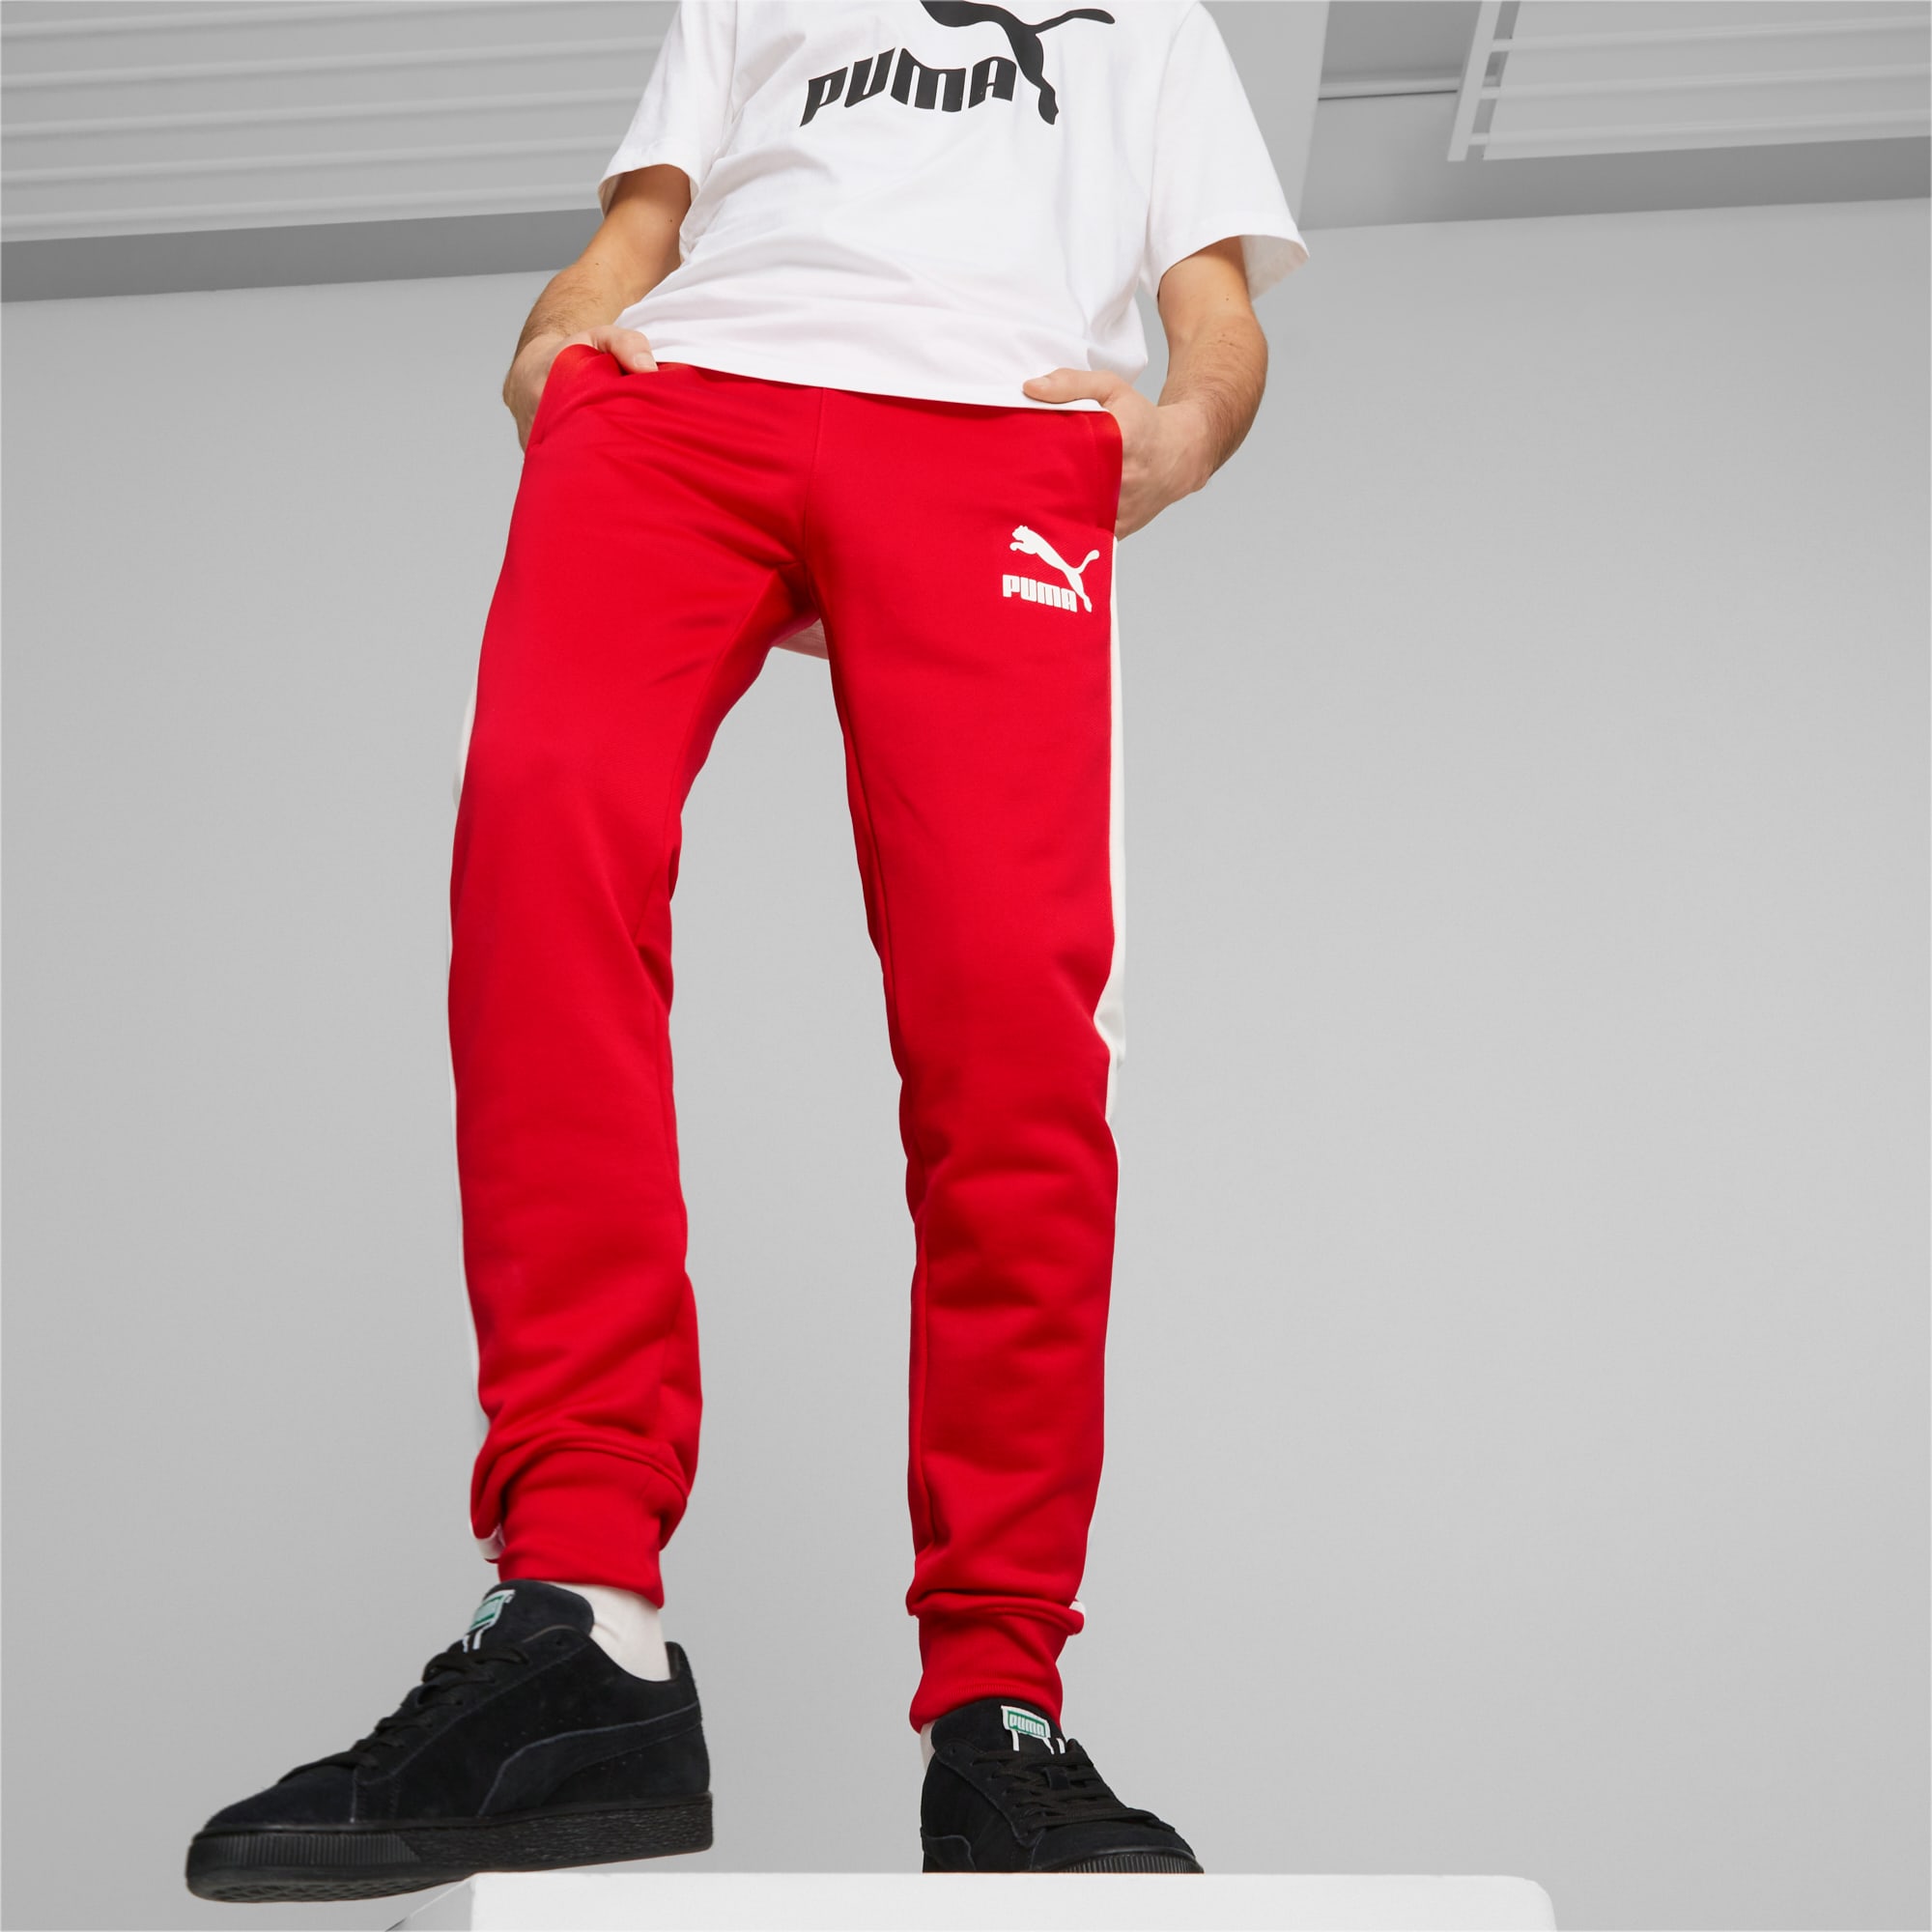 PUMA Iconic T7 Herren Trainingshose, Rot, Größe: 3XL, Kleidung